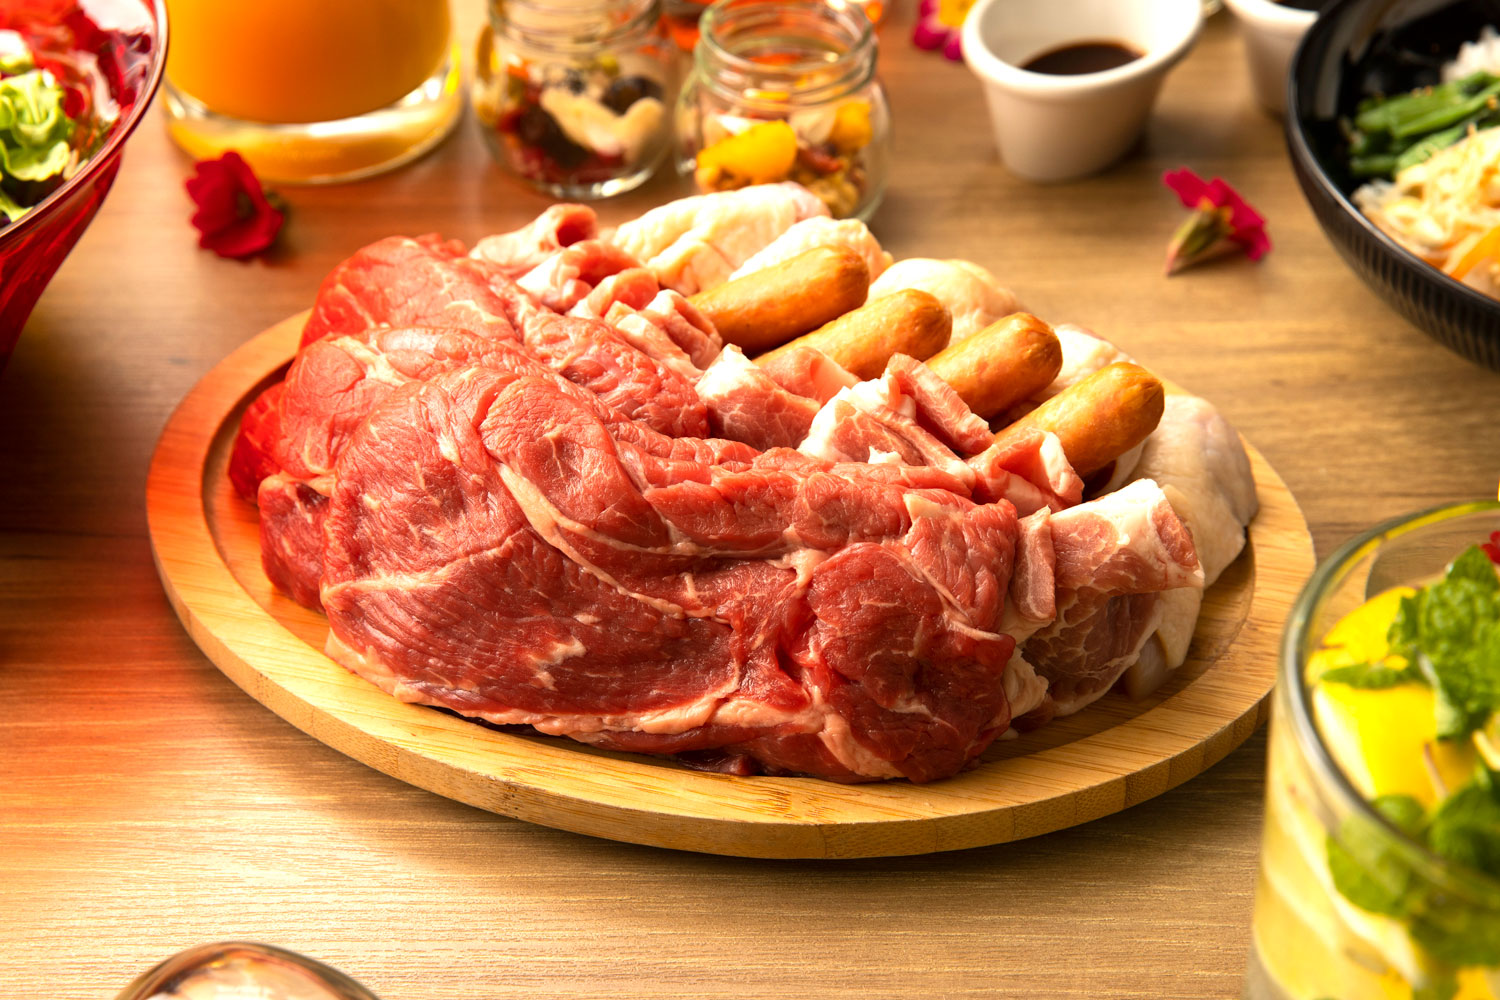 ミートプレートも牛、豚、鶏、ソーセージのセット310gに加え、USビーフのステーキが150gとボリューム満点だ。プレミアBBQプランではステーキが松坂牛に変わり、牛と豚も国産のものが提供される